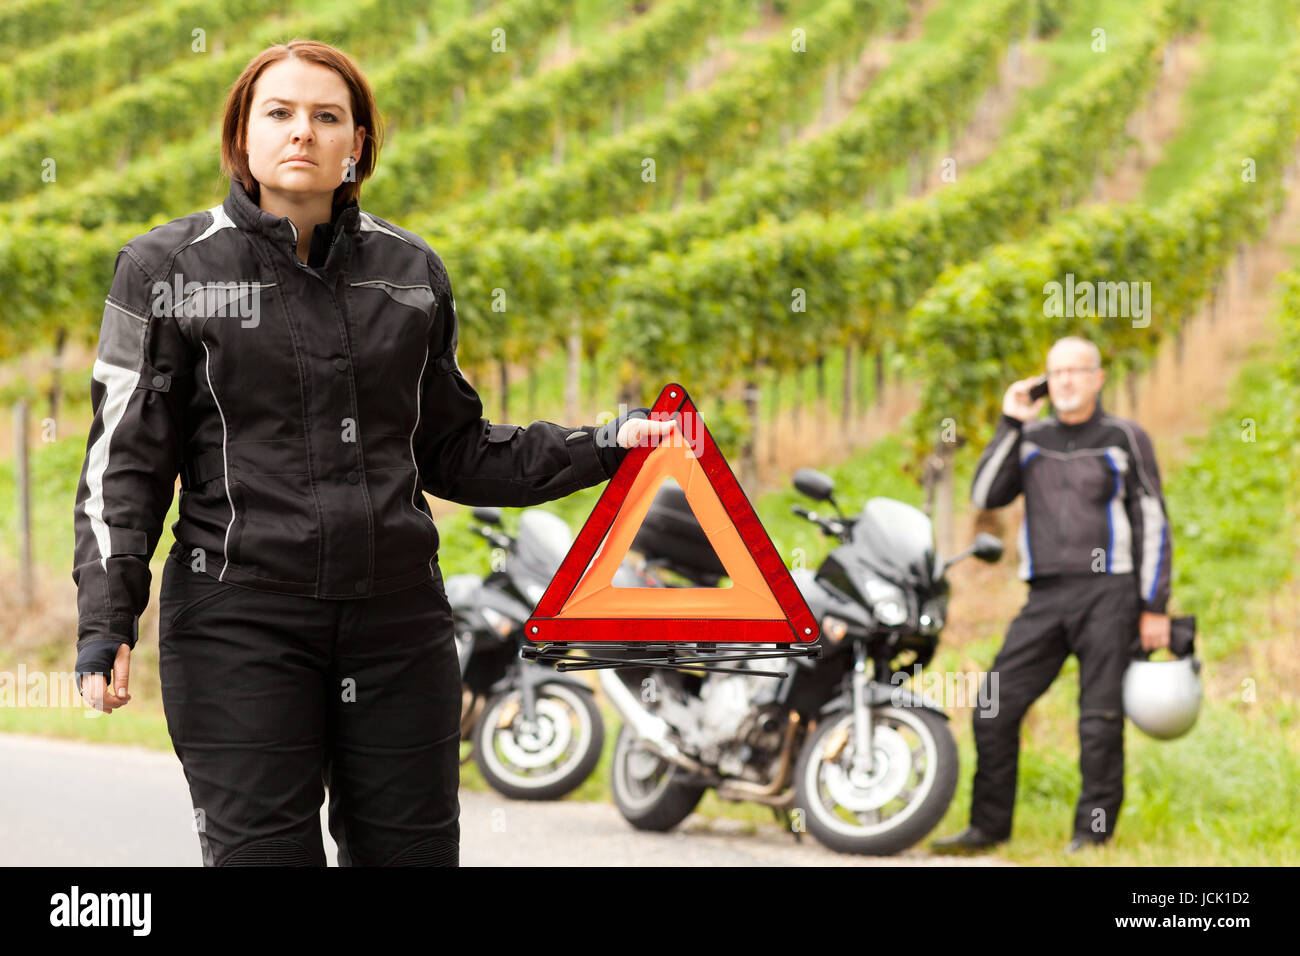 Motorradfahrerin mit Pannendreieck bei einer Panne Stock Photo - Alamy